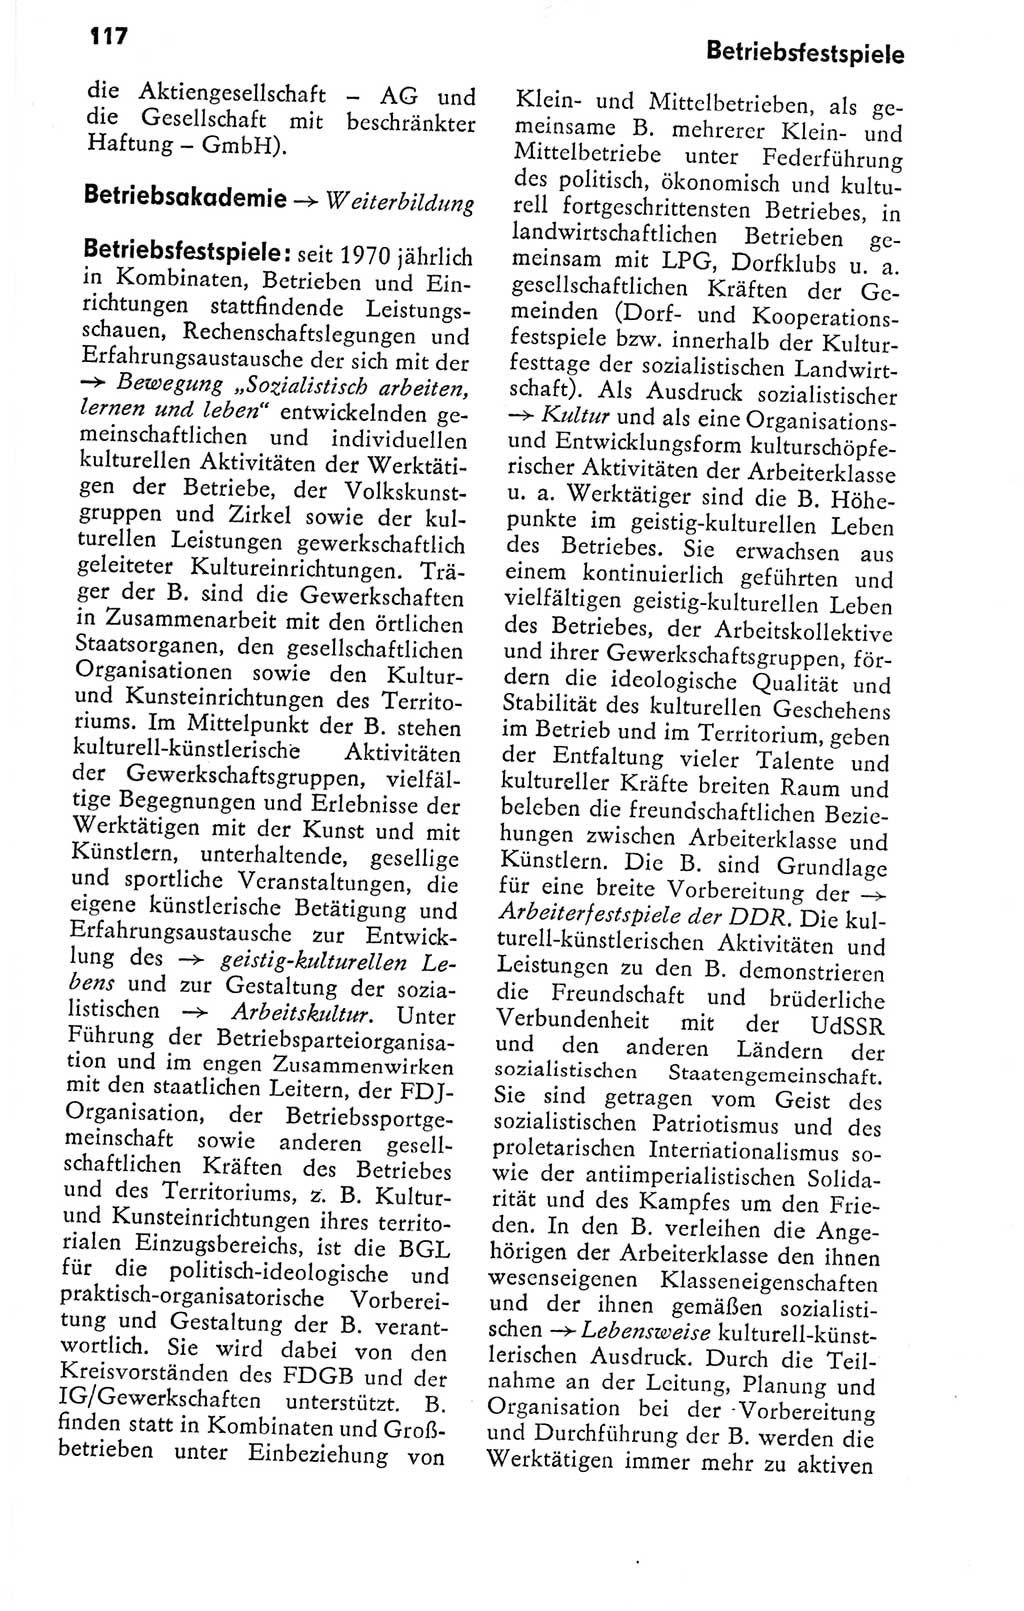 Kleines politisches Wörterbuch [Deutsche Demokratische Republik (DDR)] 1978, Seite 117 (Kl. pol. Wb. DDR 1978, S. 117)